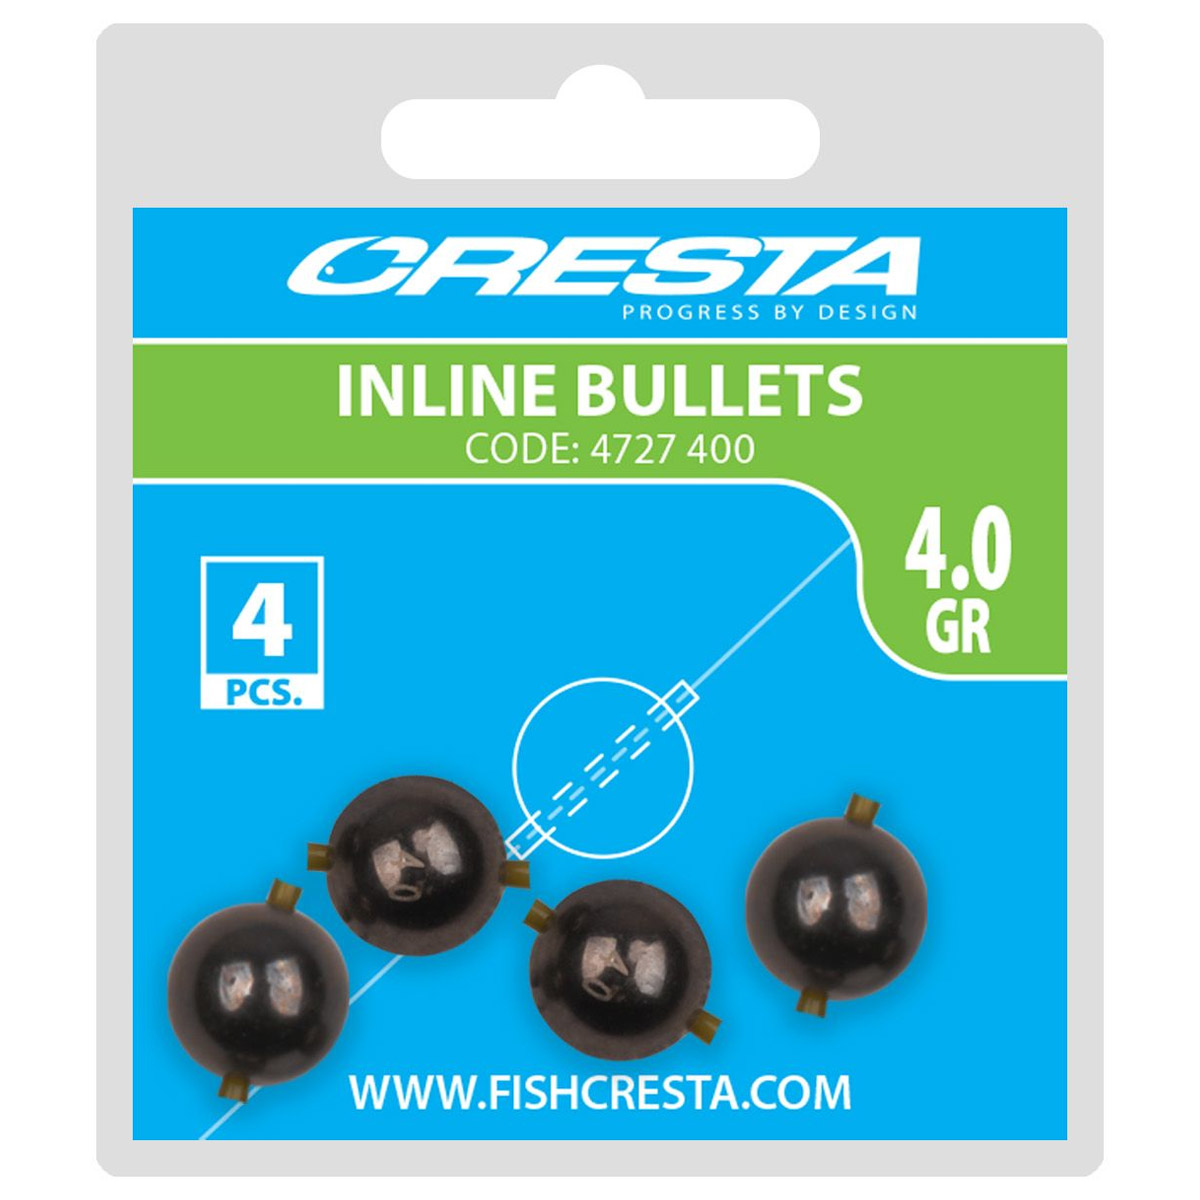 Cresta Inline Bullets